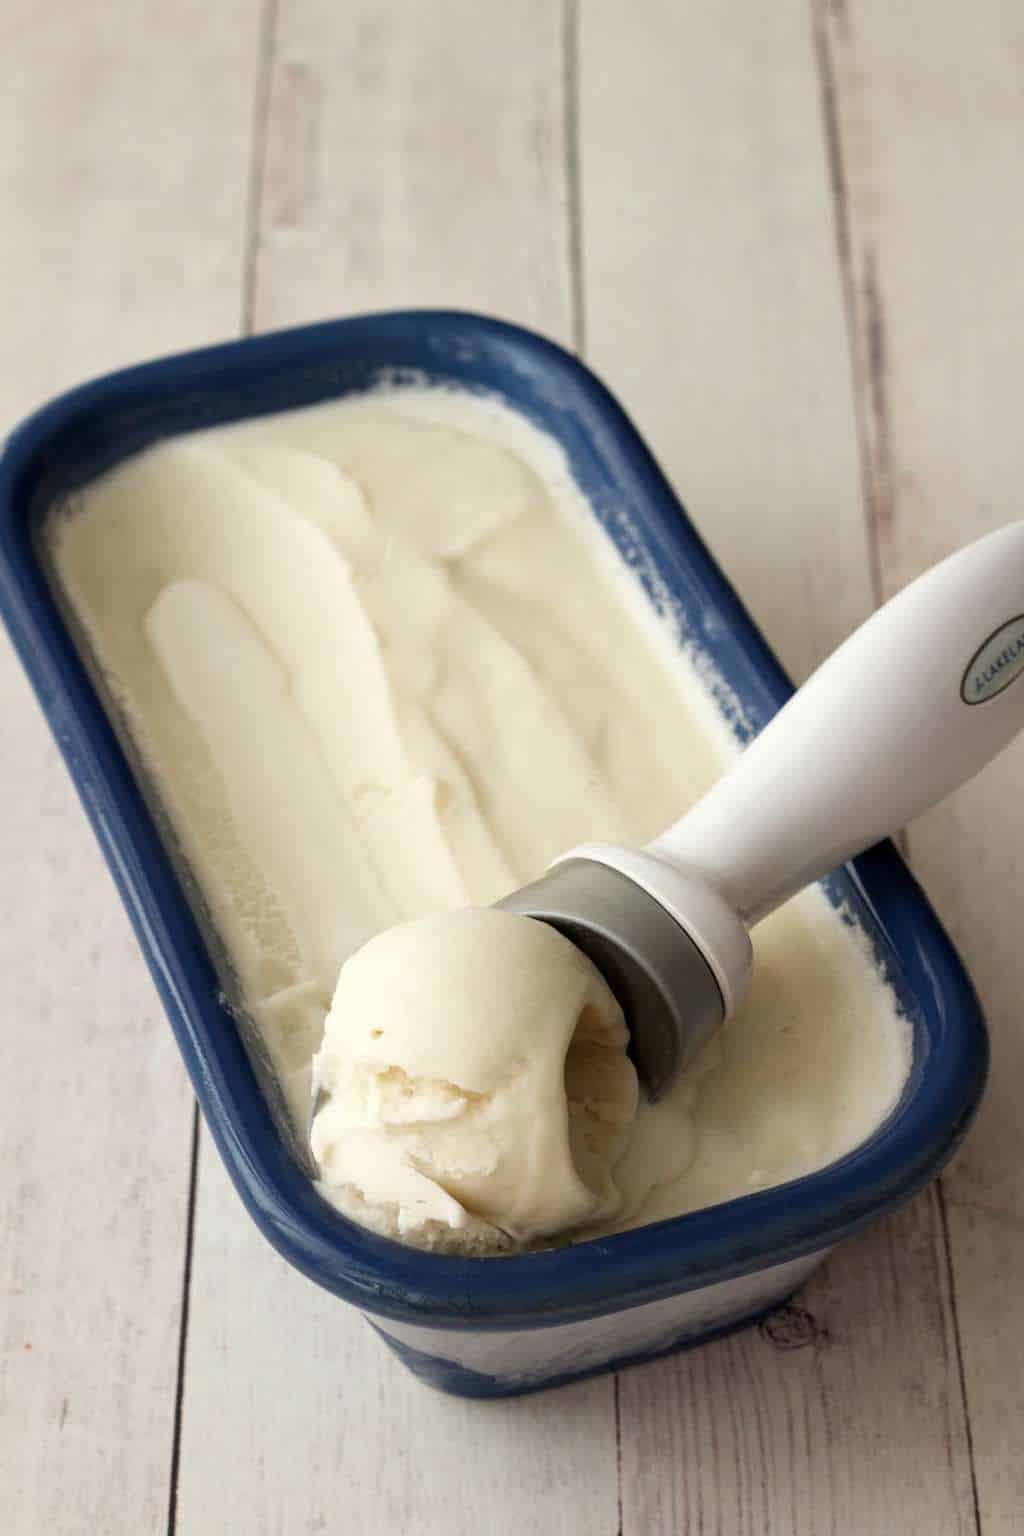 Vegan coconut ice cream in a blue ceramic dish with an ice cream scoop. 